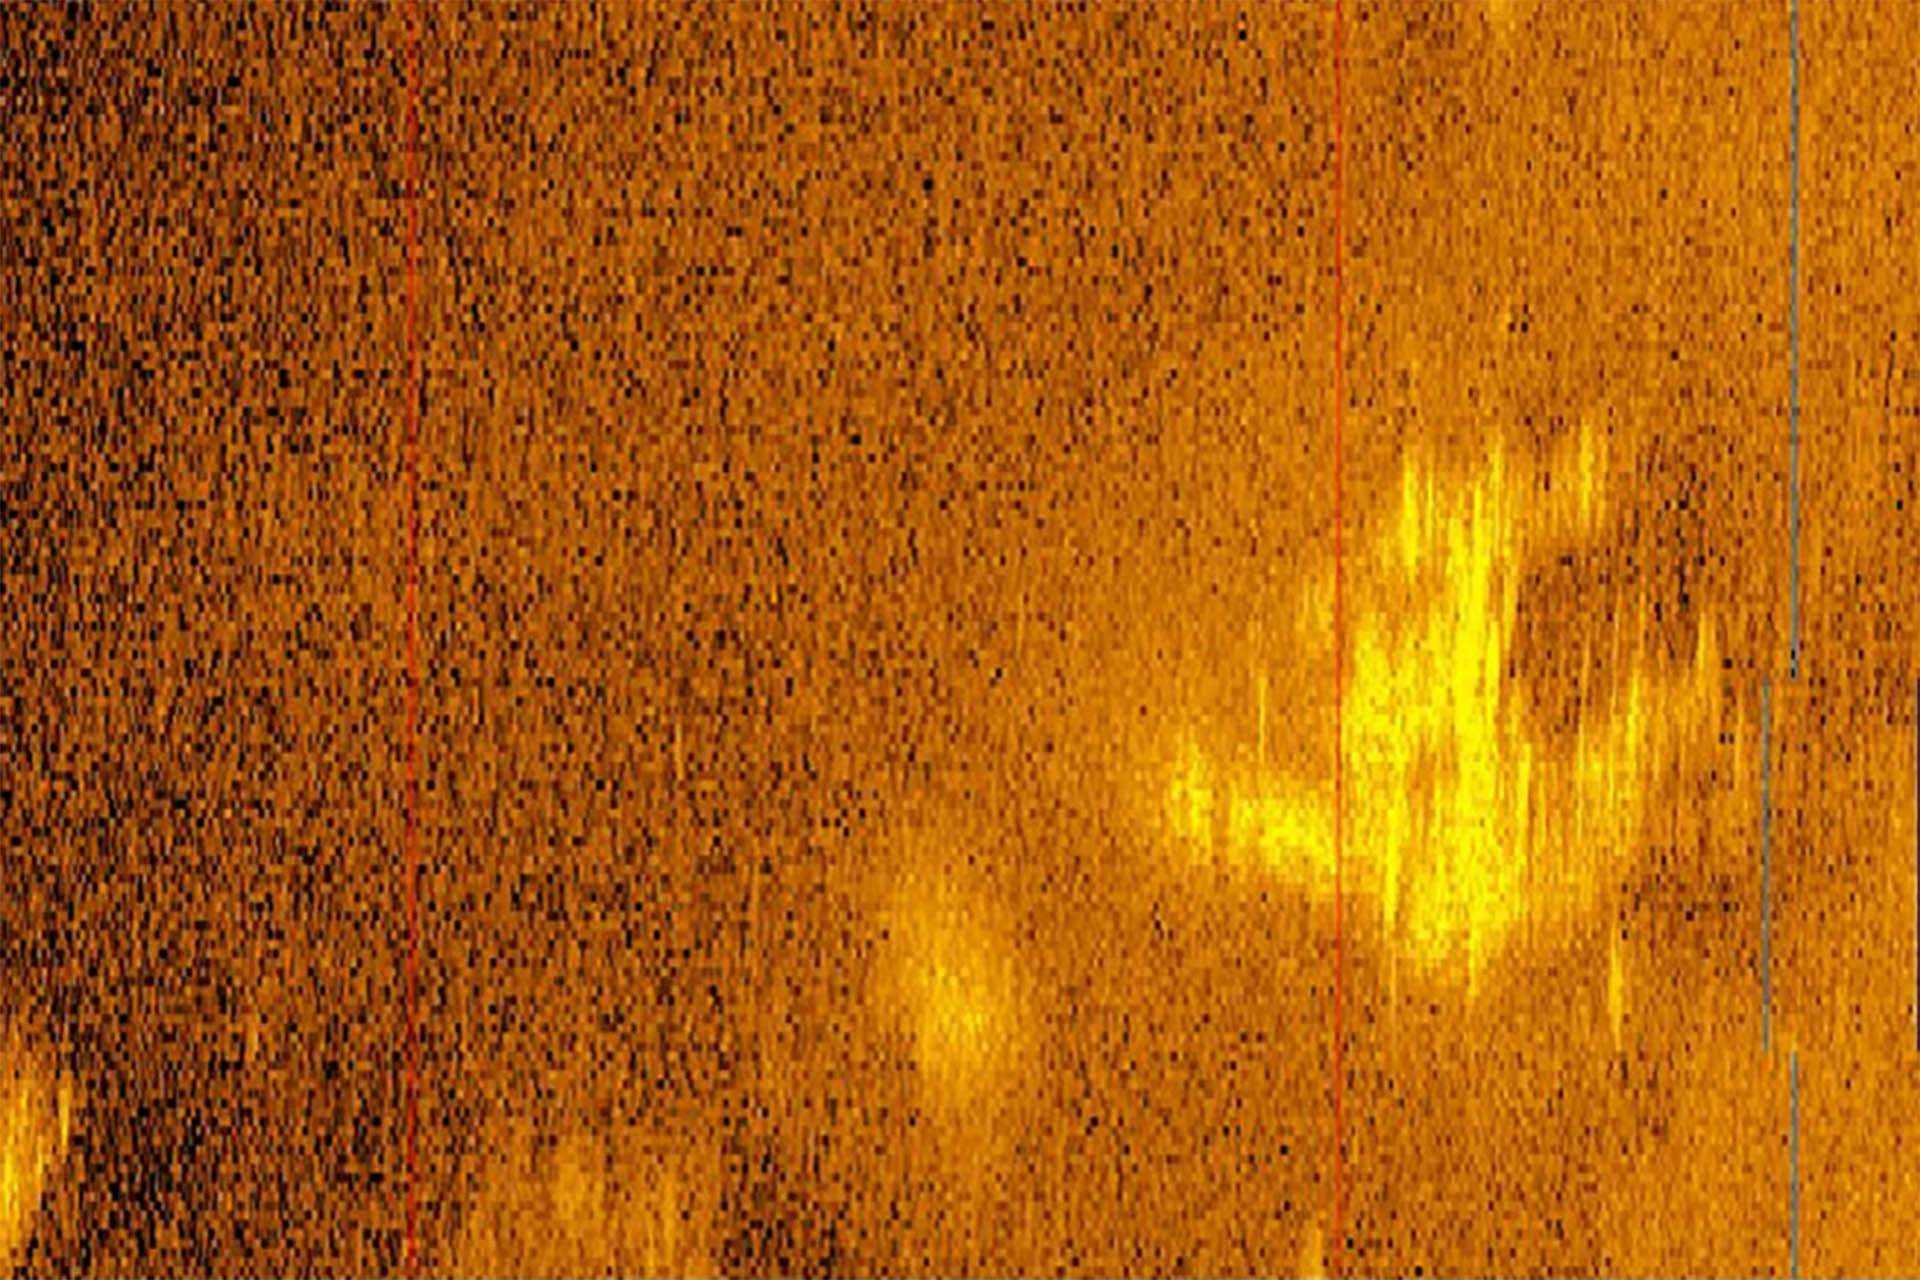 Гидроакустическое изображение аномалии на дне океана, напоминающей самолет Амелии Эрхарт, пропавший без вести